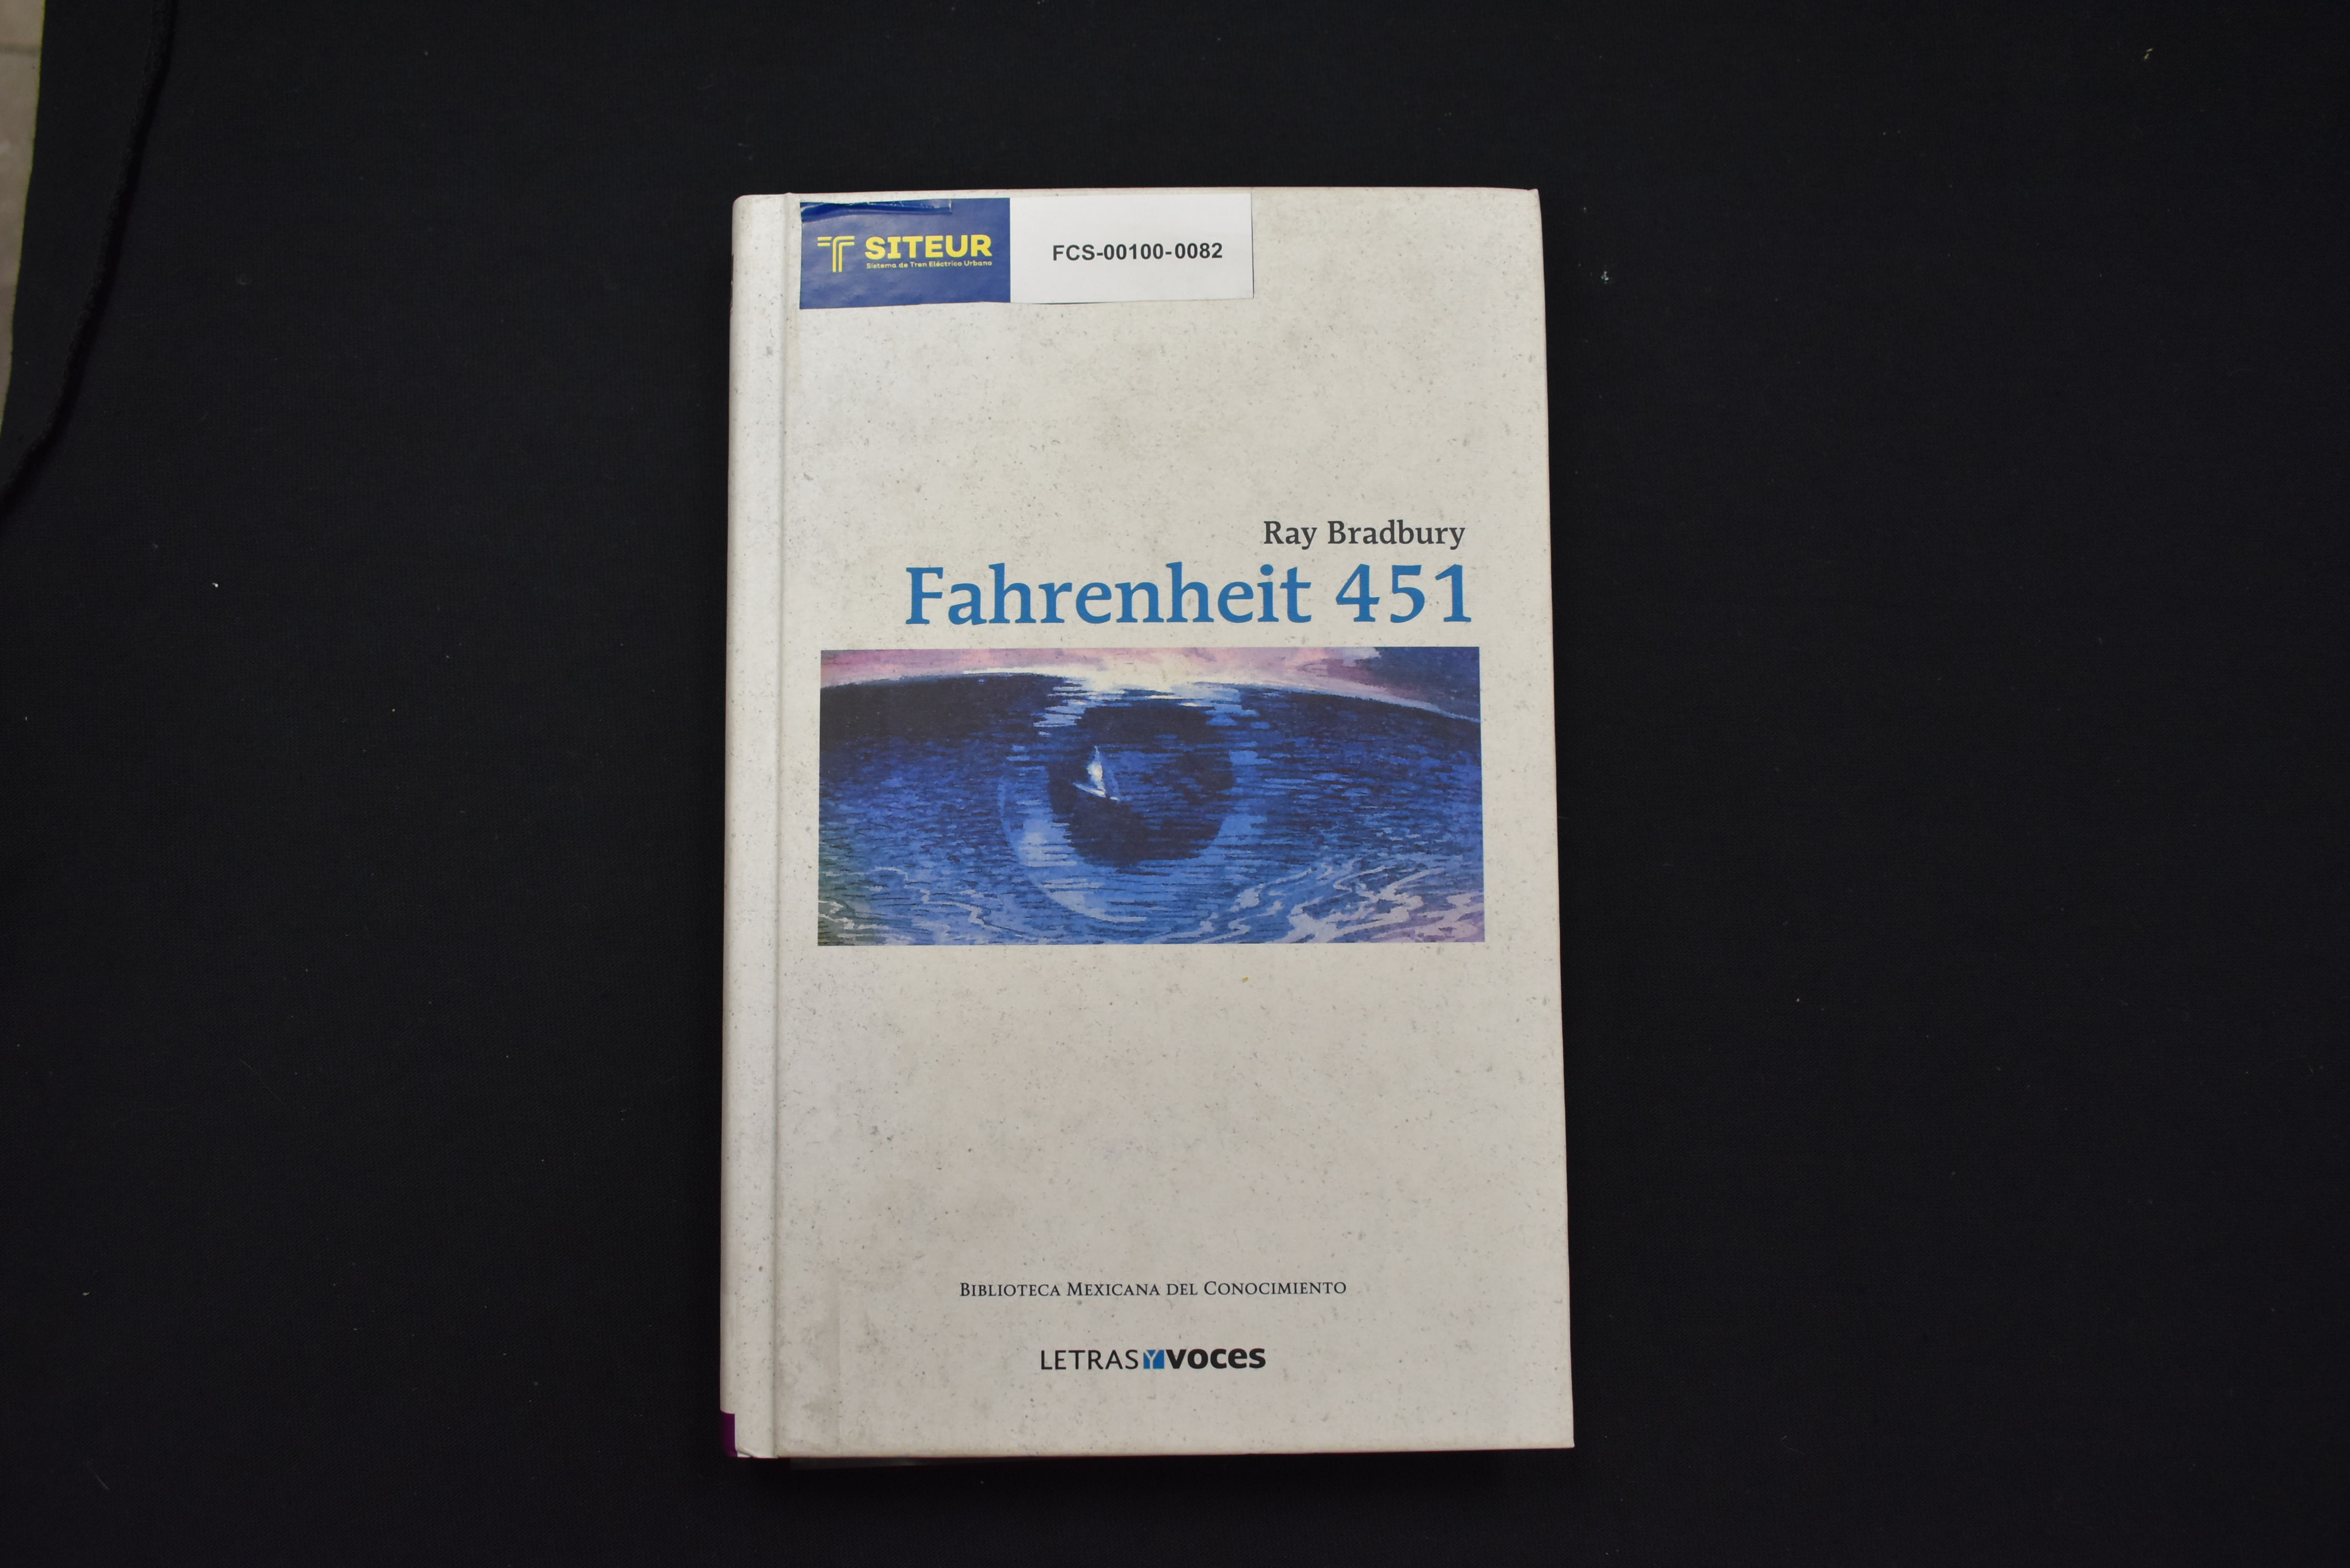 Farenheit 451